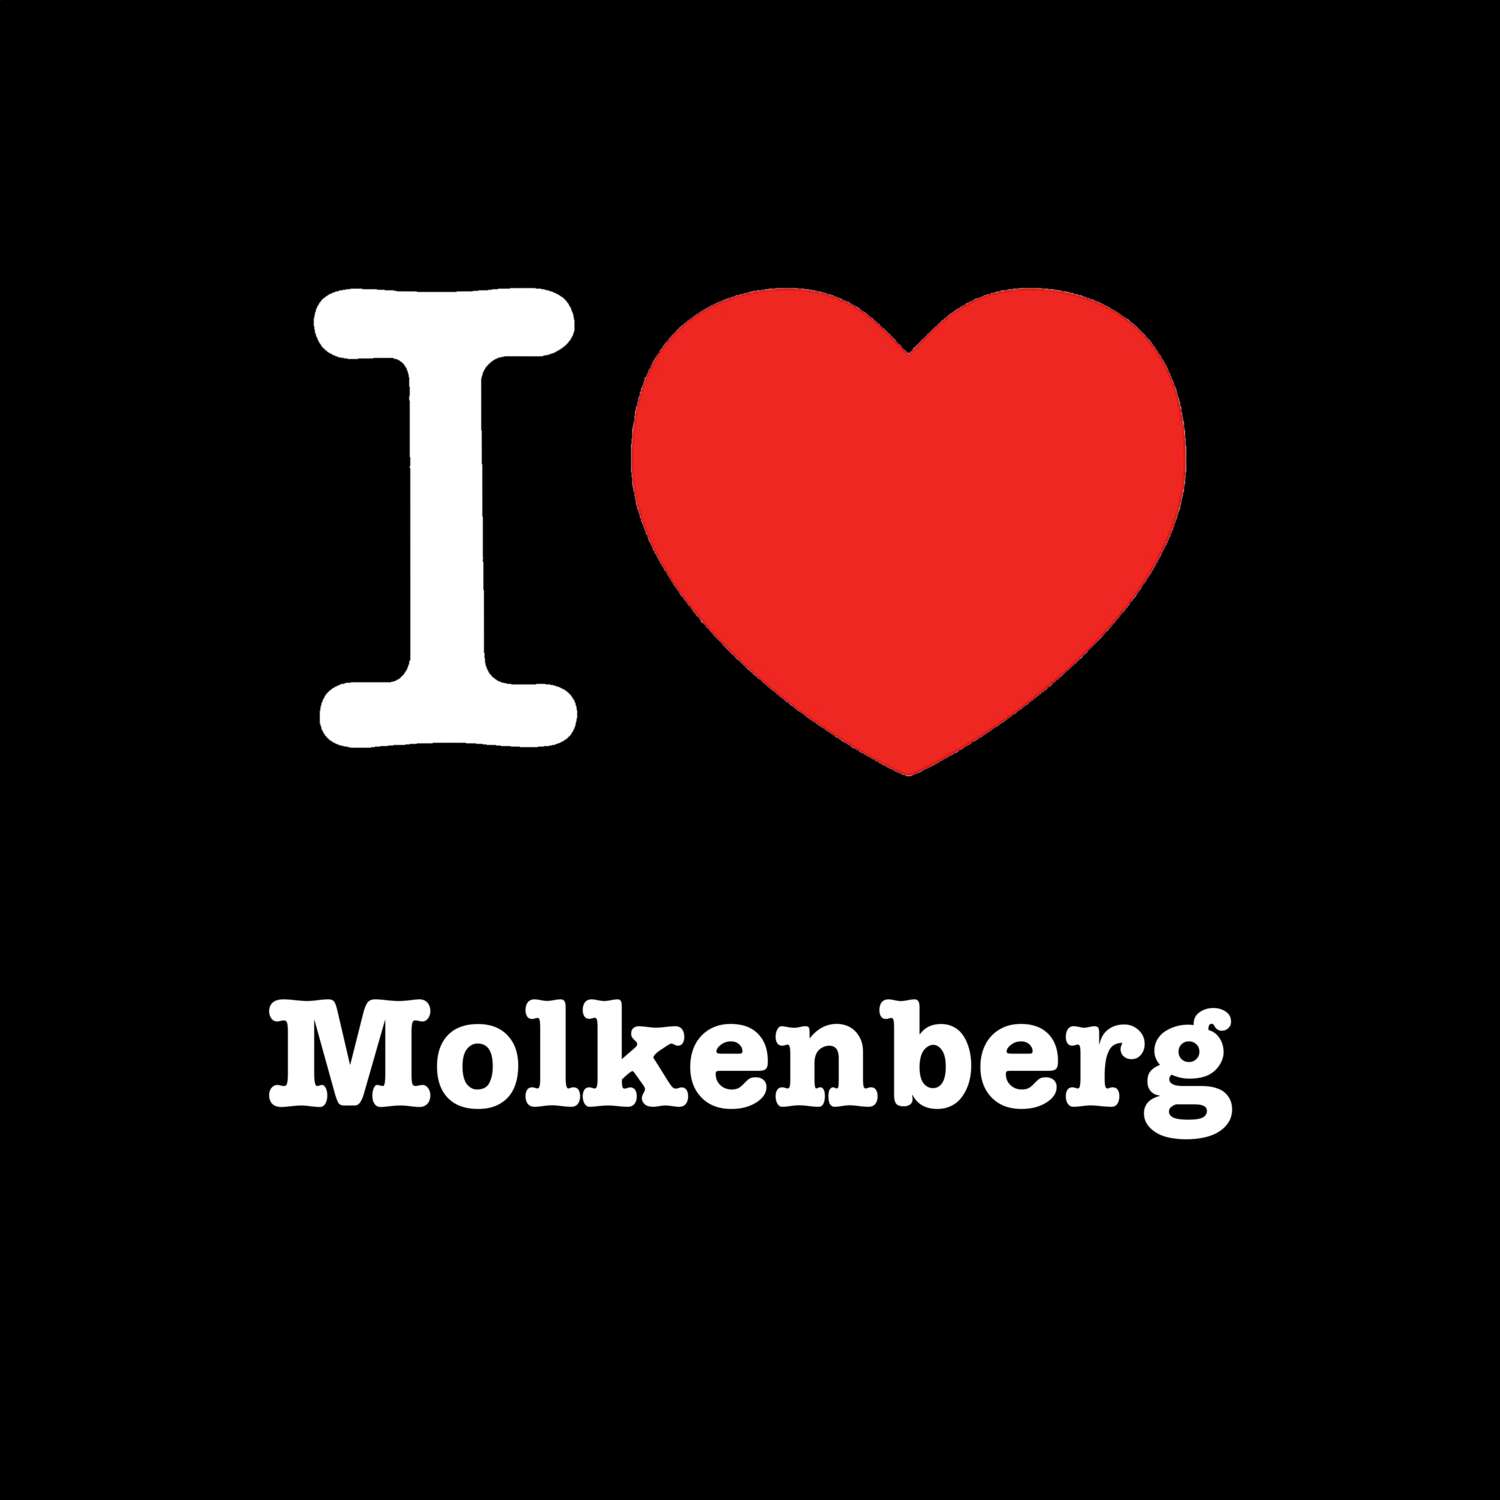 Molkenberg T-Shirt »I love«